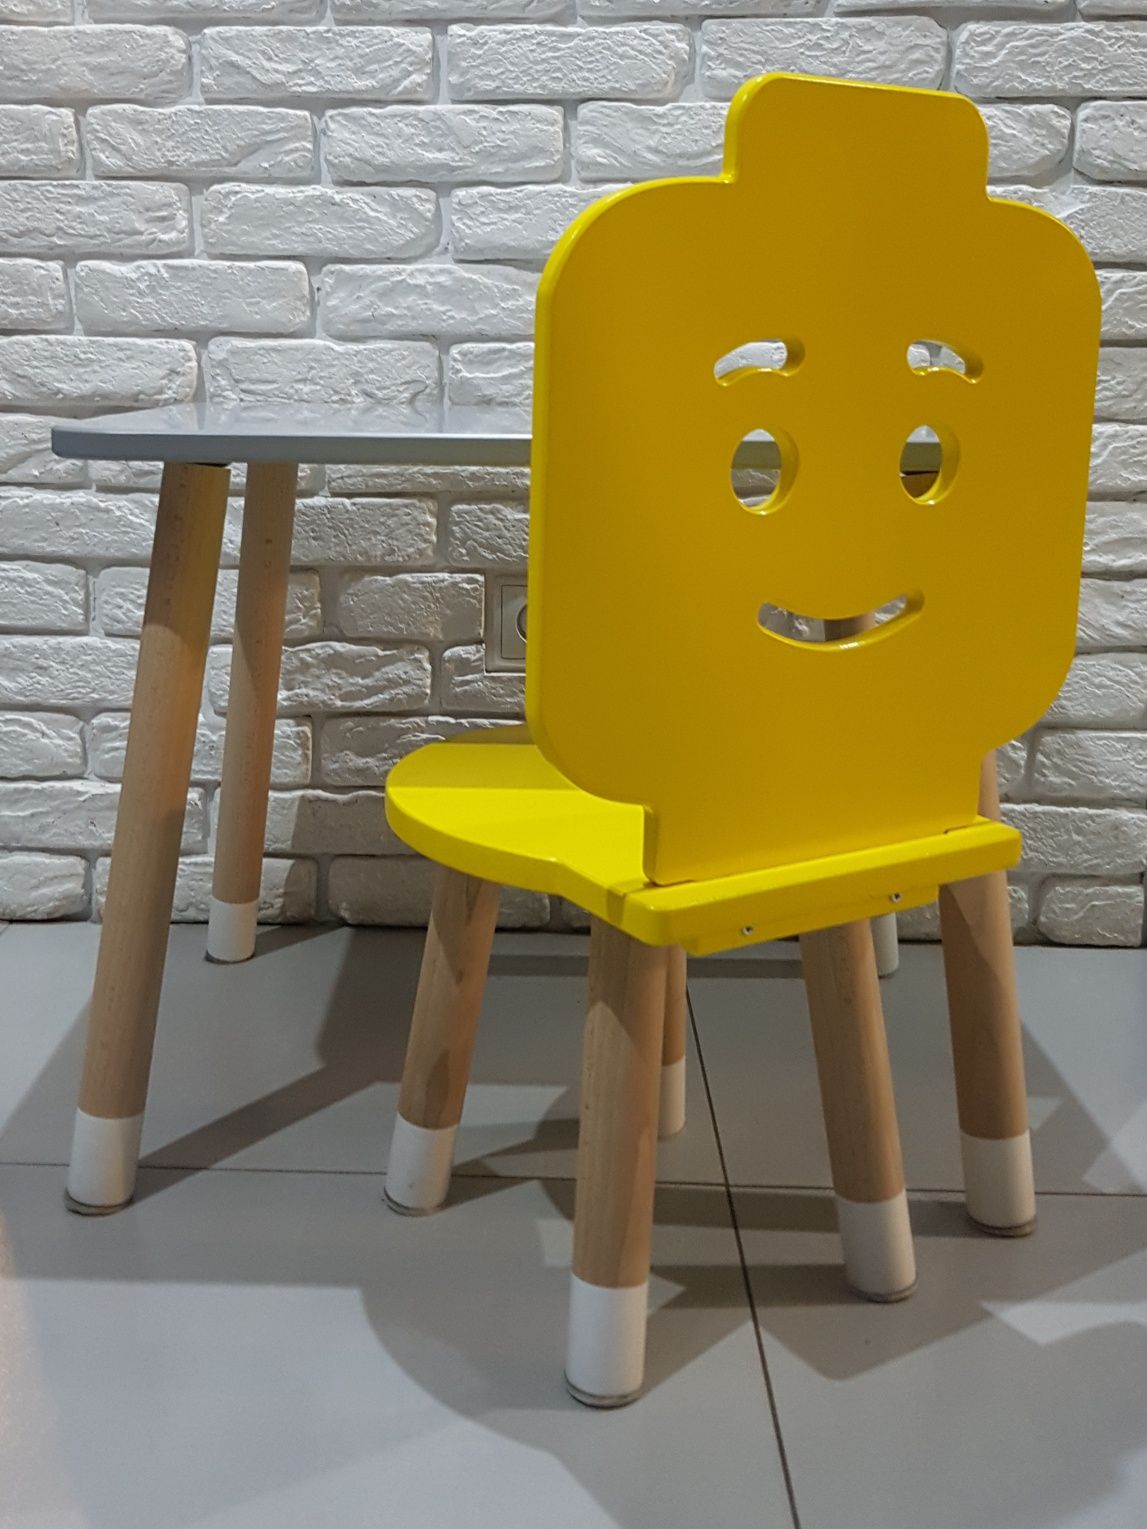 Stolik + krzesełko Lego, drewniane, polski producent